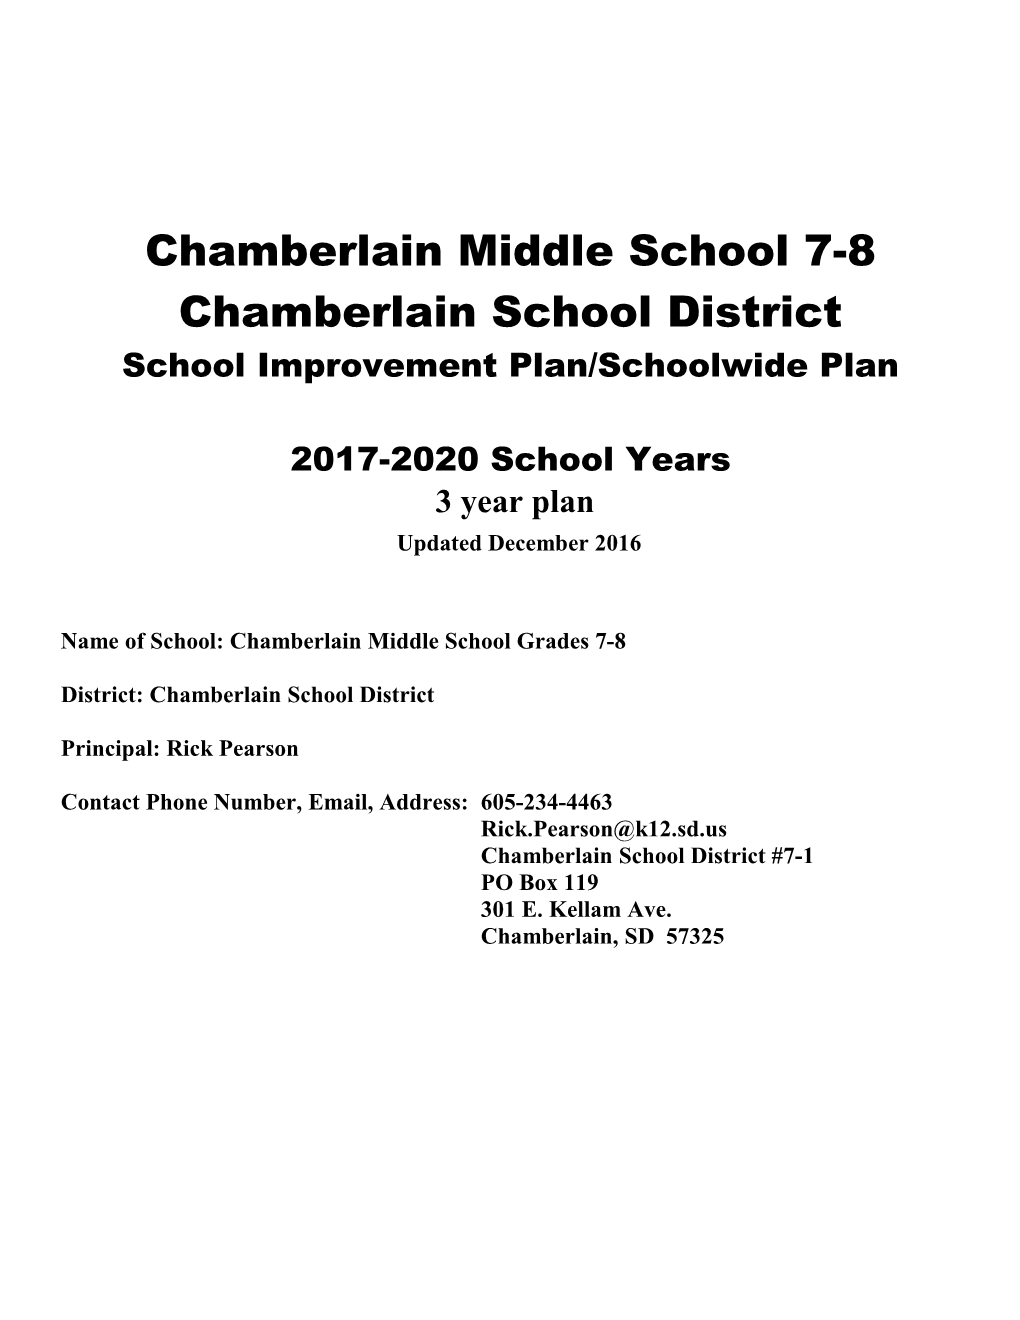 School Improvement Plan/Schoolwide Plan